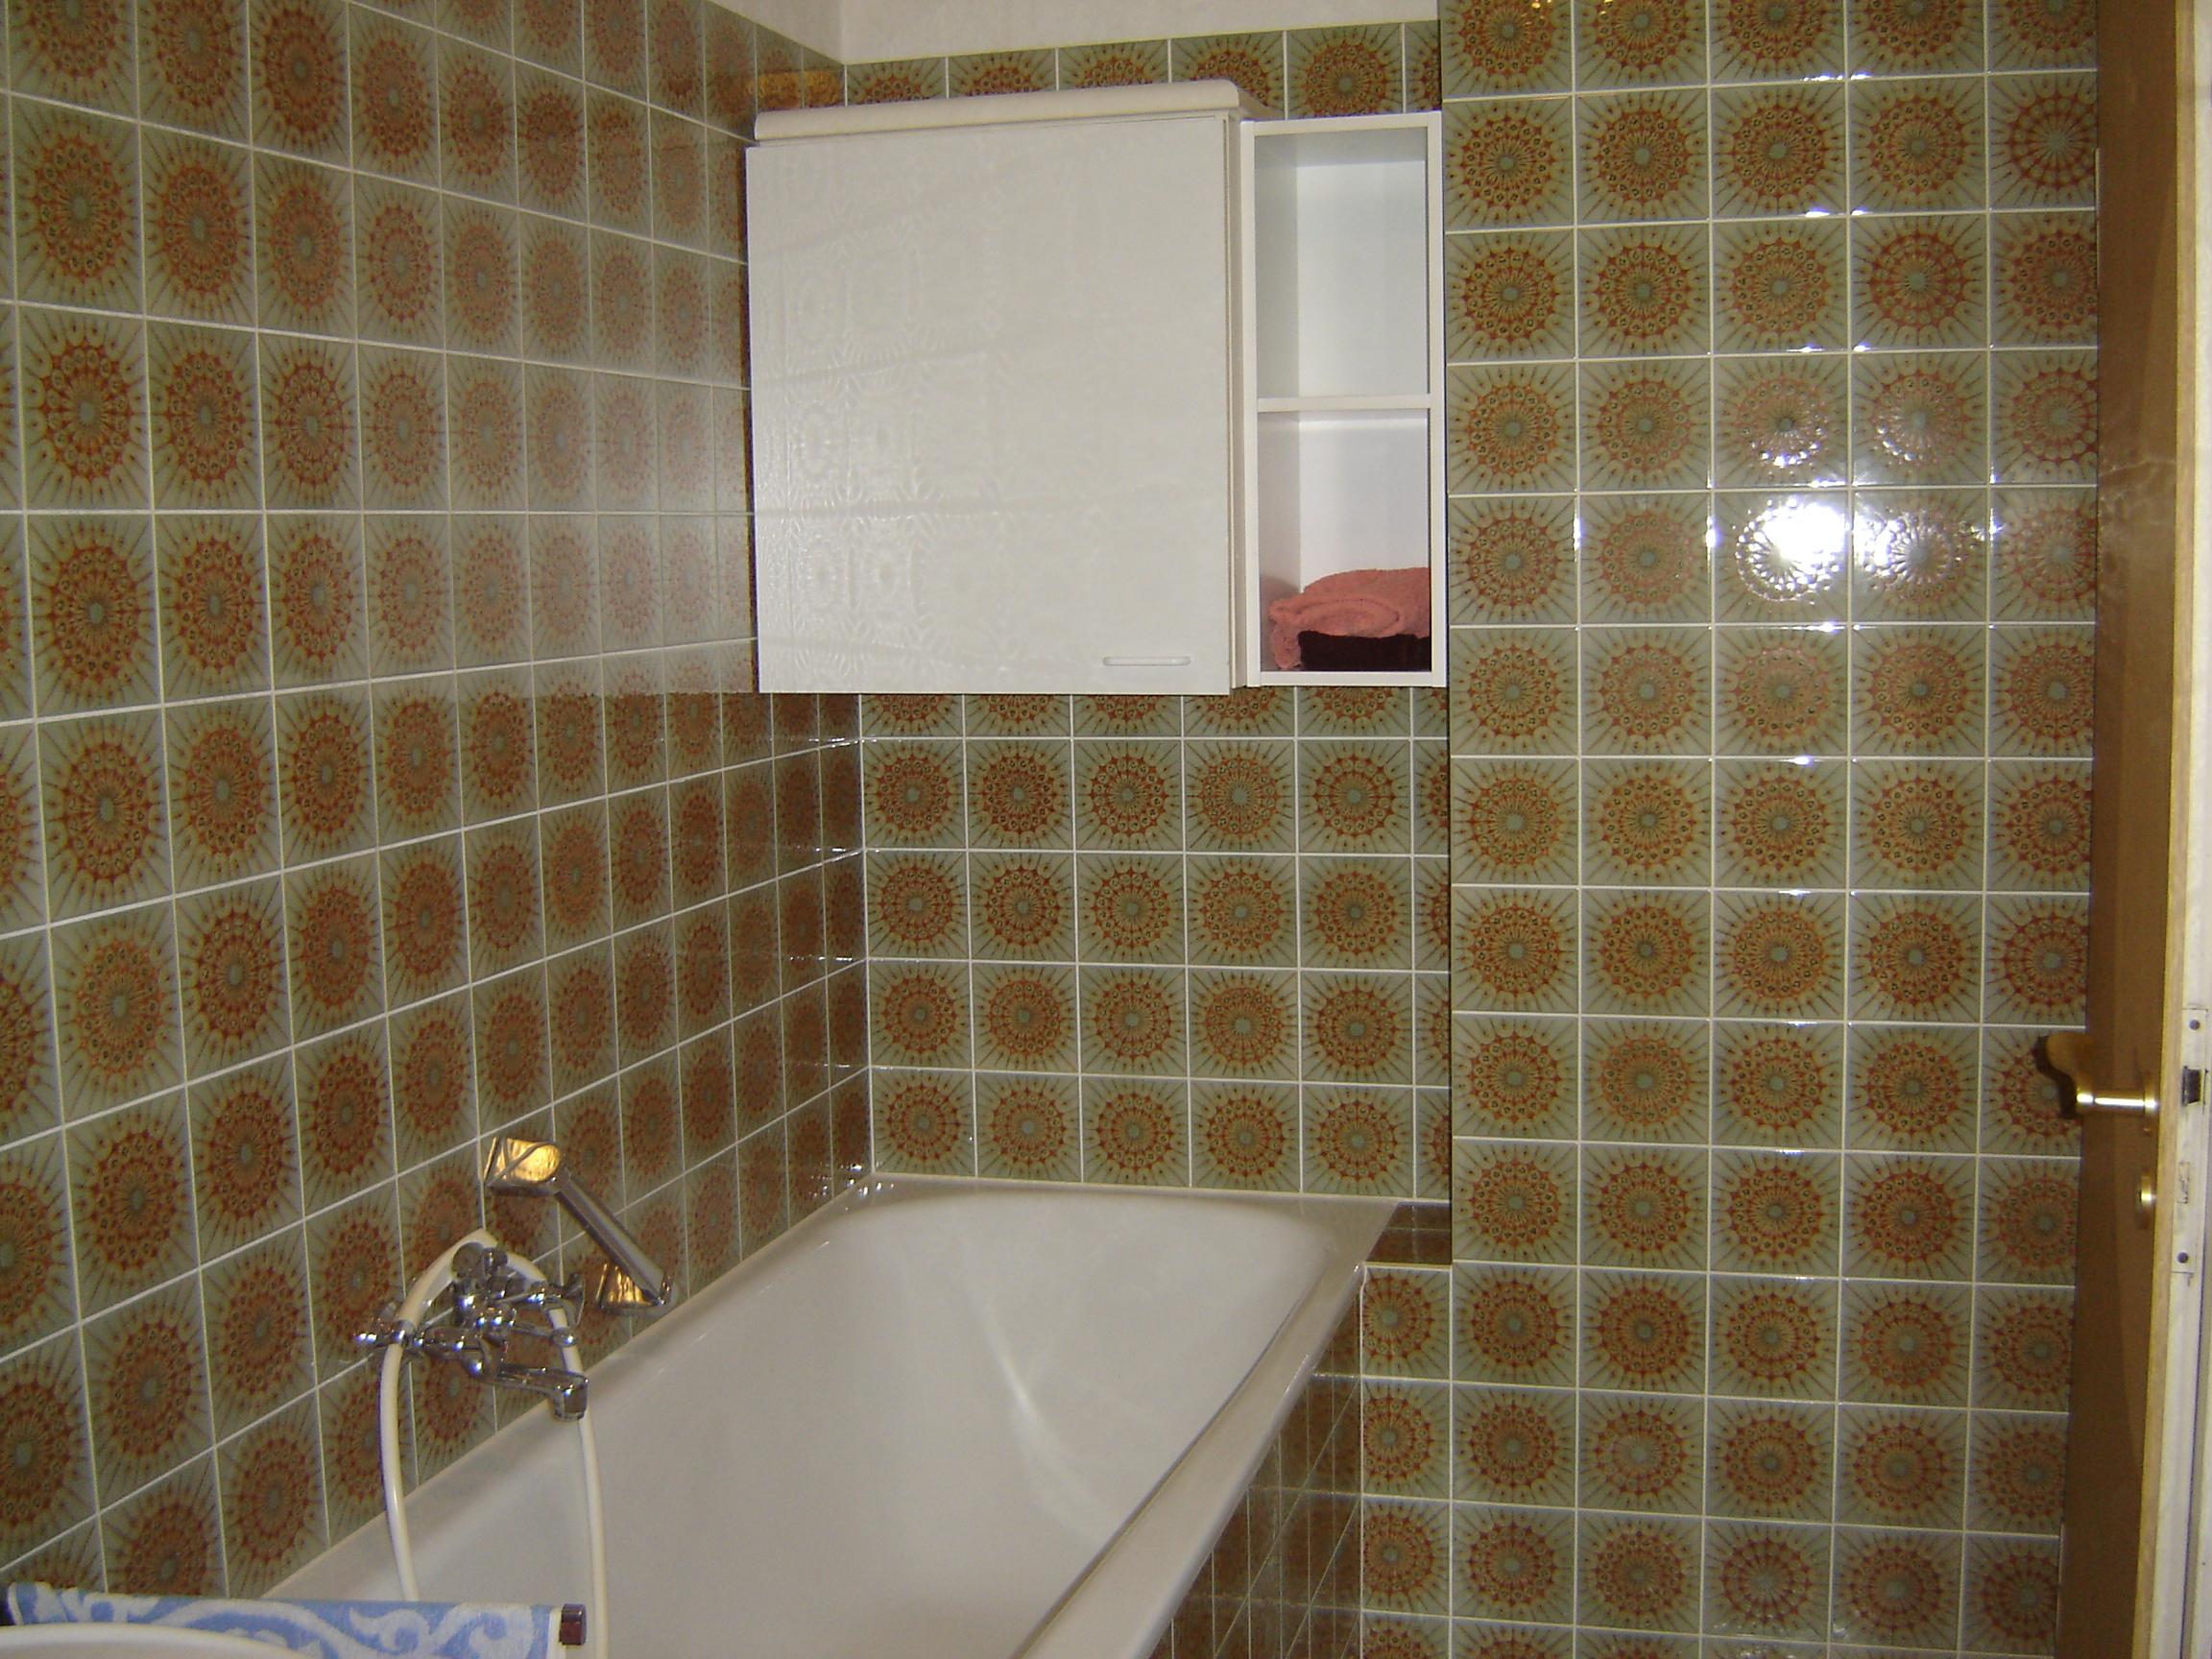 Badezimmer aus den 60 zigern vorher #bad #fliesen #dusche #badezimmerschrank #fliesenmuster ©Dagmar Schwenzfeuer